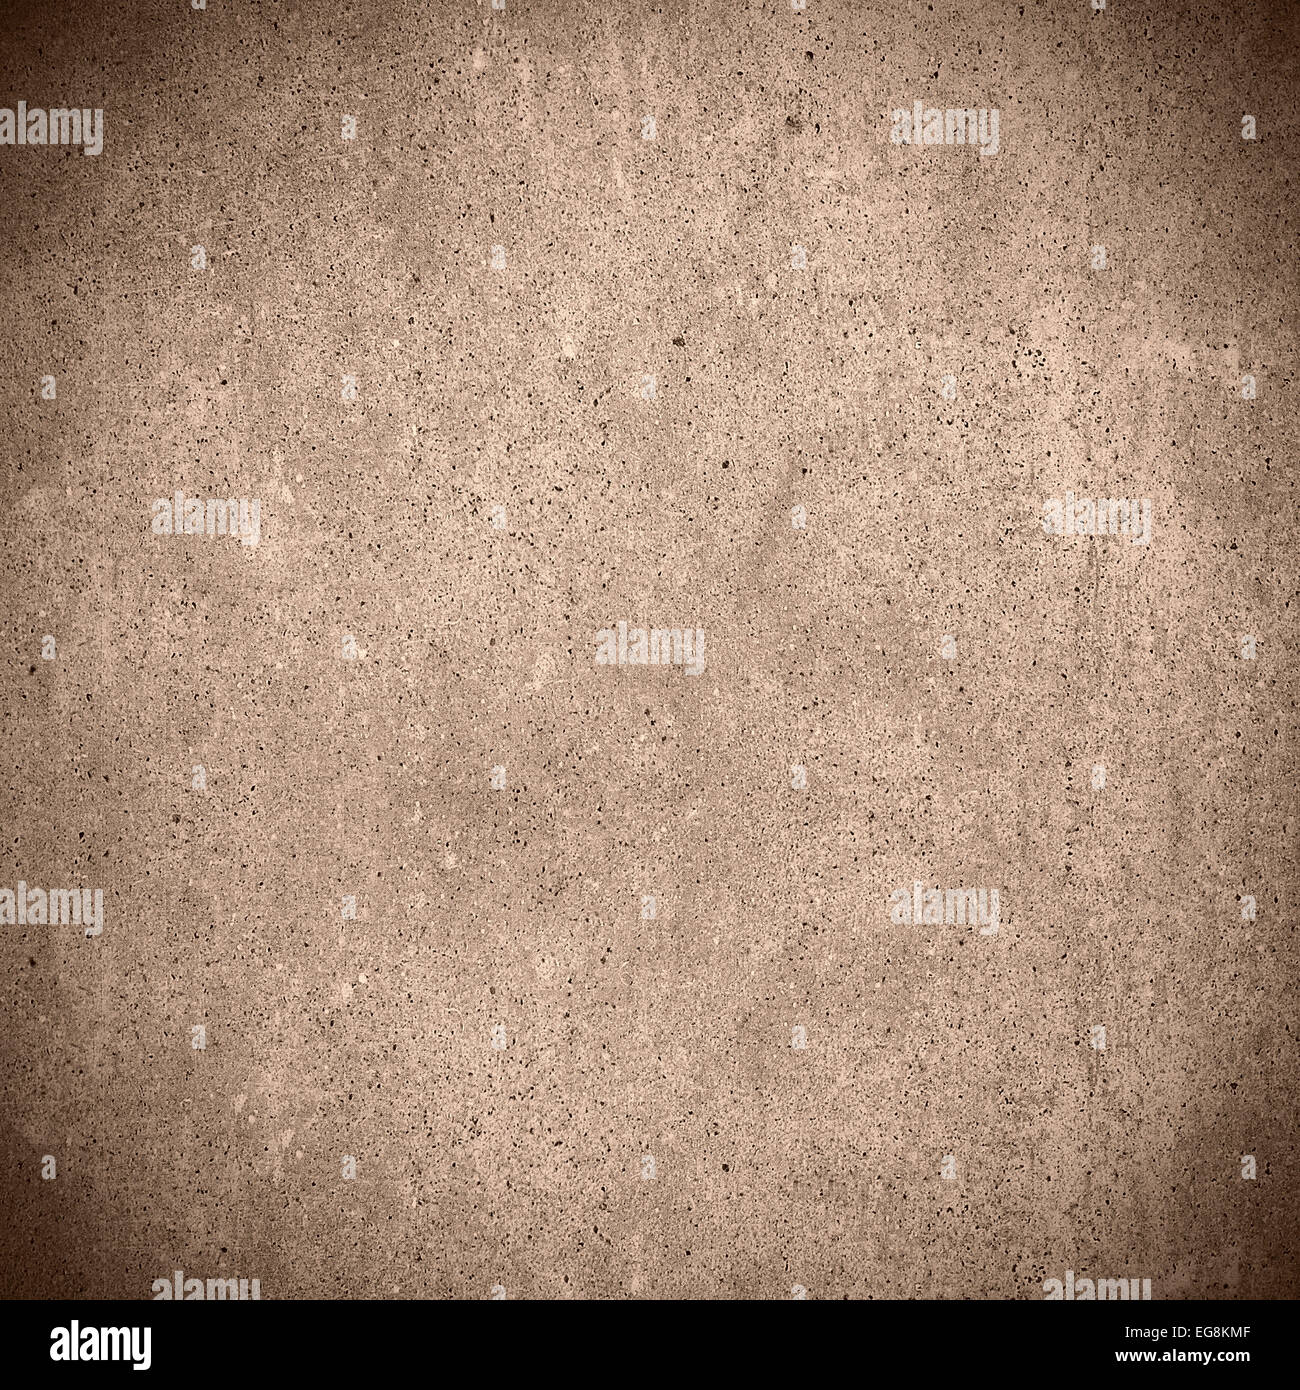 Résumé fond brun ou de ciment texture grain pattern Banque D'Images